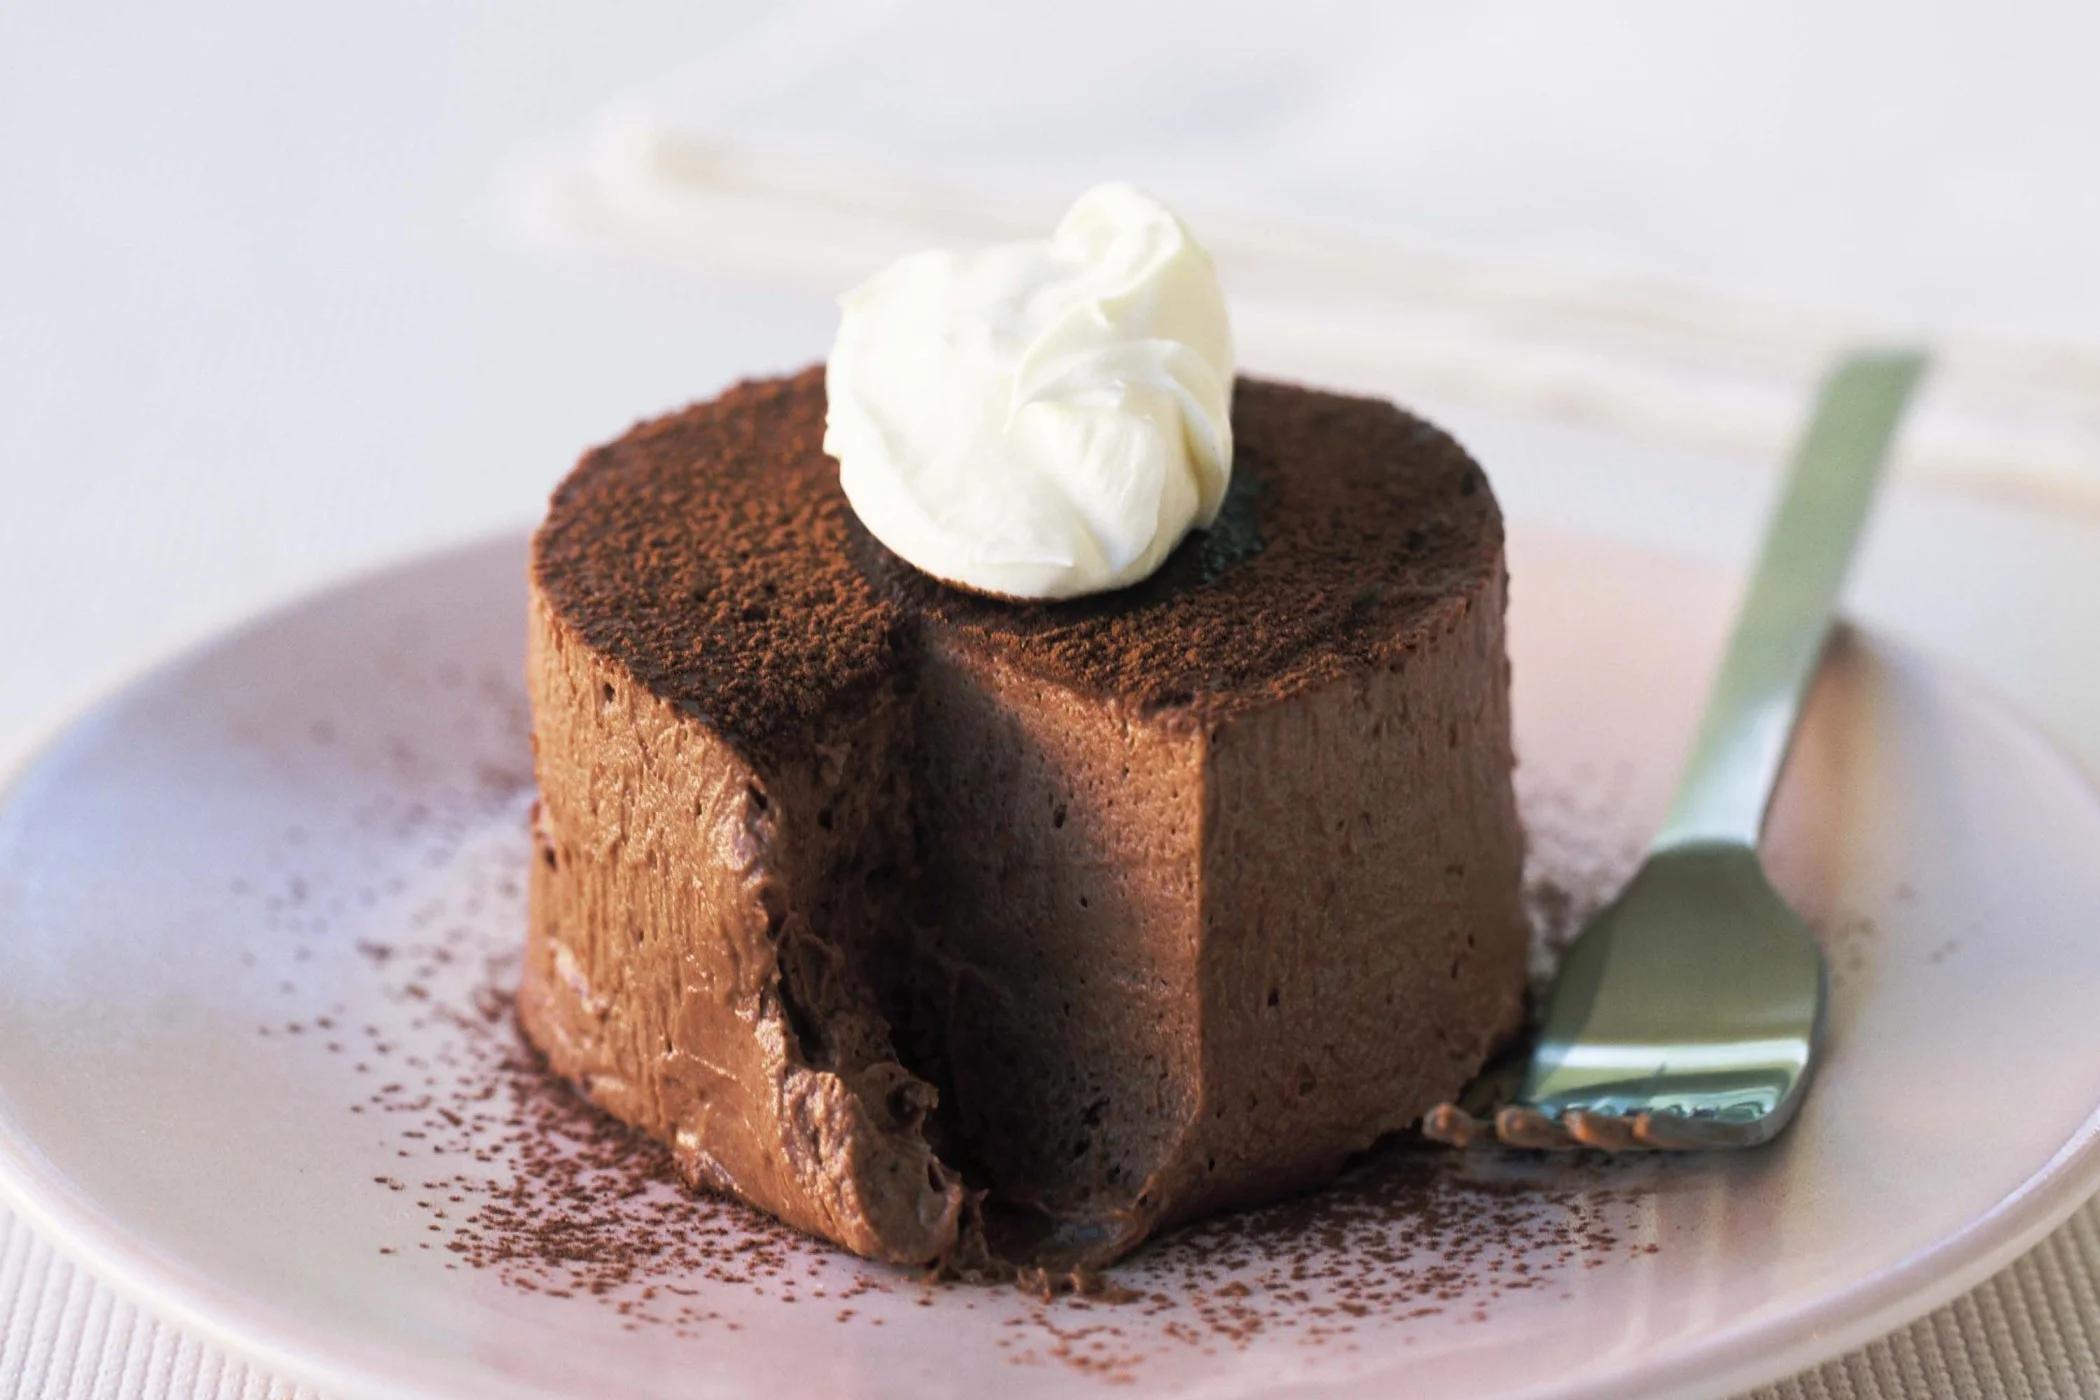 دستور تهیه دسر شکلاتی رژیمی | بدون ترس از چاقی، دسر بخورید! + طرز تهیه